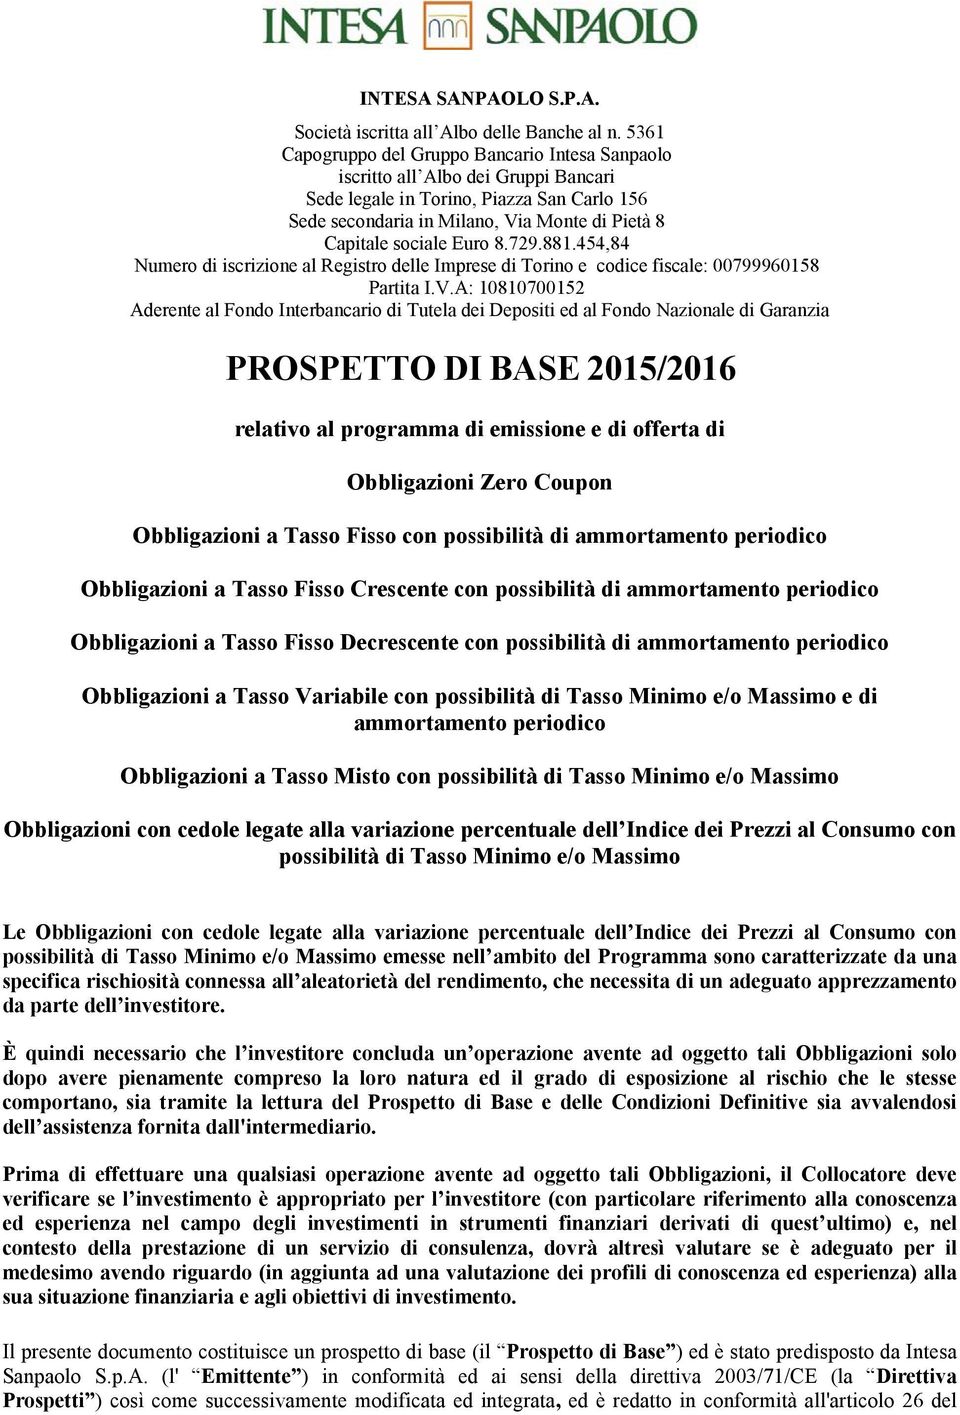 Euro 8.729.881.454,84 Numero di iscrizione al Registro delle Imprese di Torino e codice fiscale: 00799960158 Partita I.V.